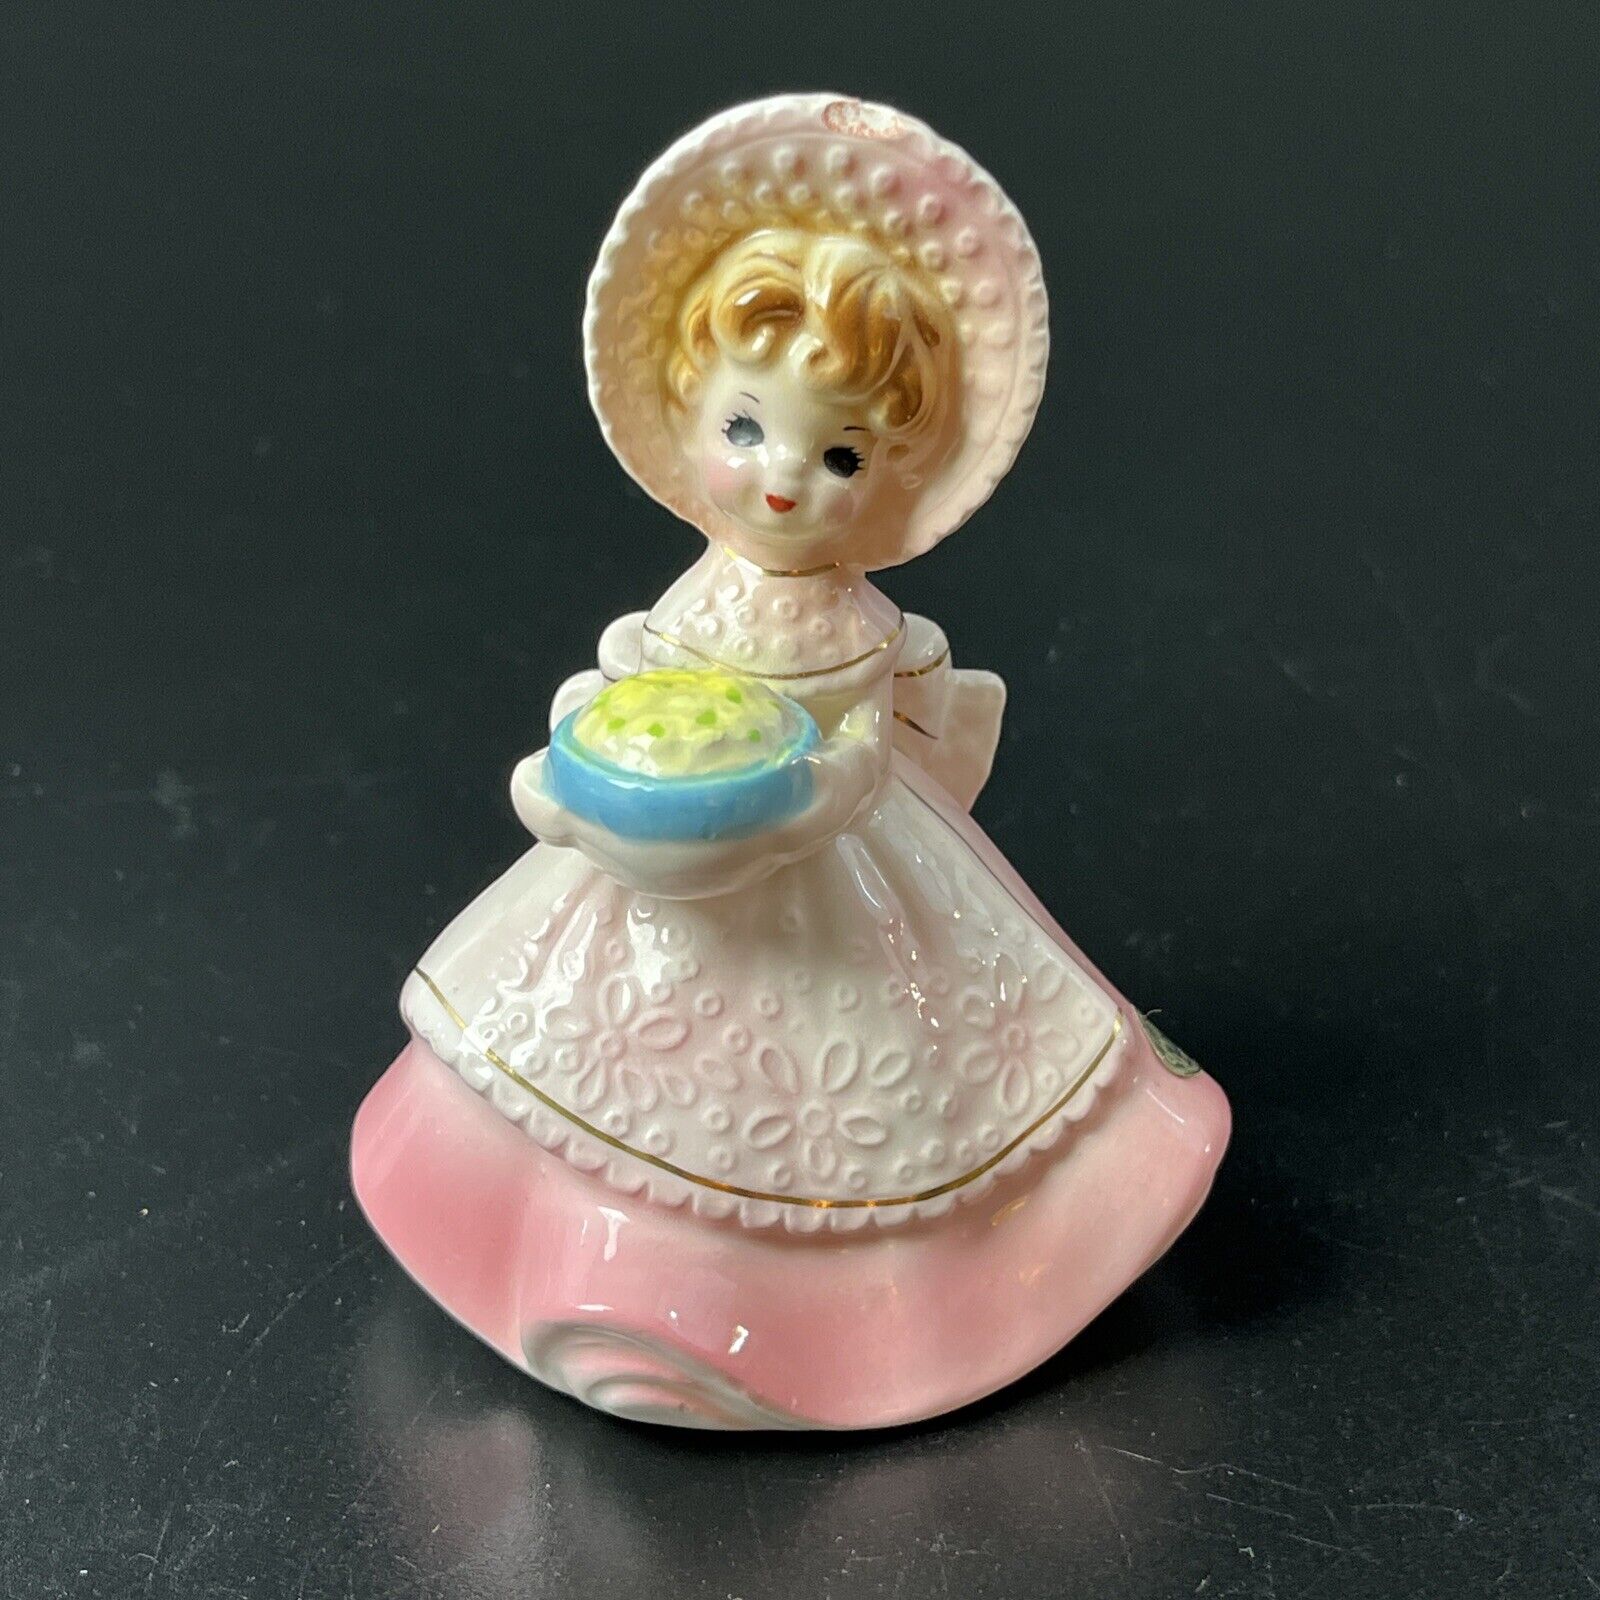 Josef Original The Little Gourmet Girl Figurine Japan Sticker Pink Bonnet Dress